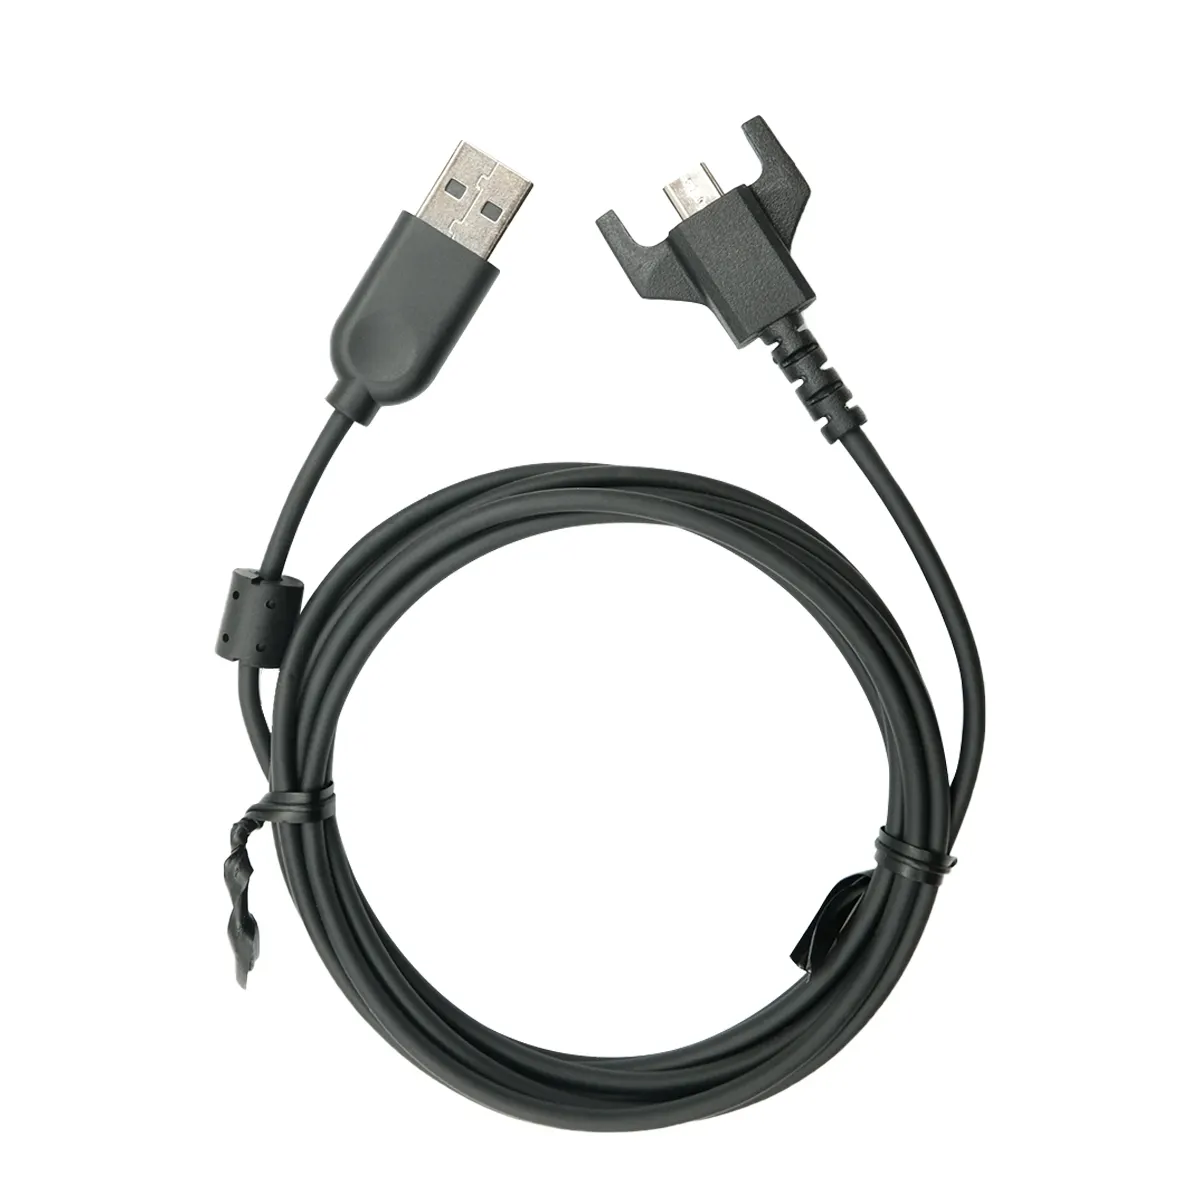 Logitech cavo di ricarica USB originale per G703 G900 G903 G Pro Wireless Pro X Superlight Mouse da Gaming, da USB a Micro USB (nero)